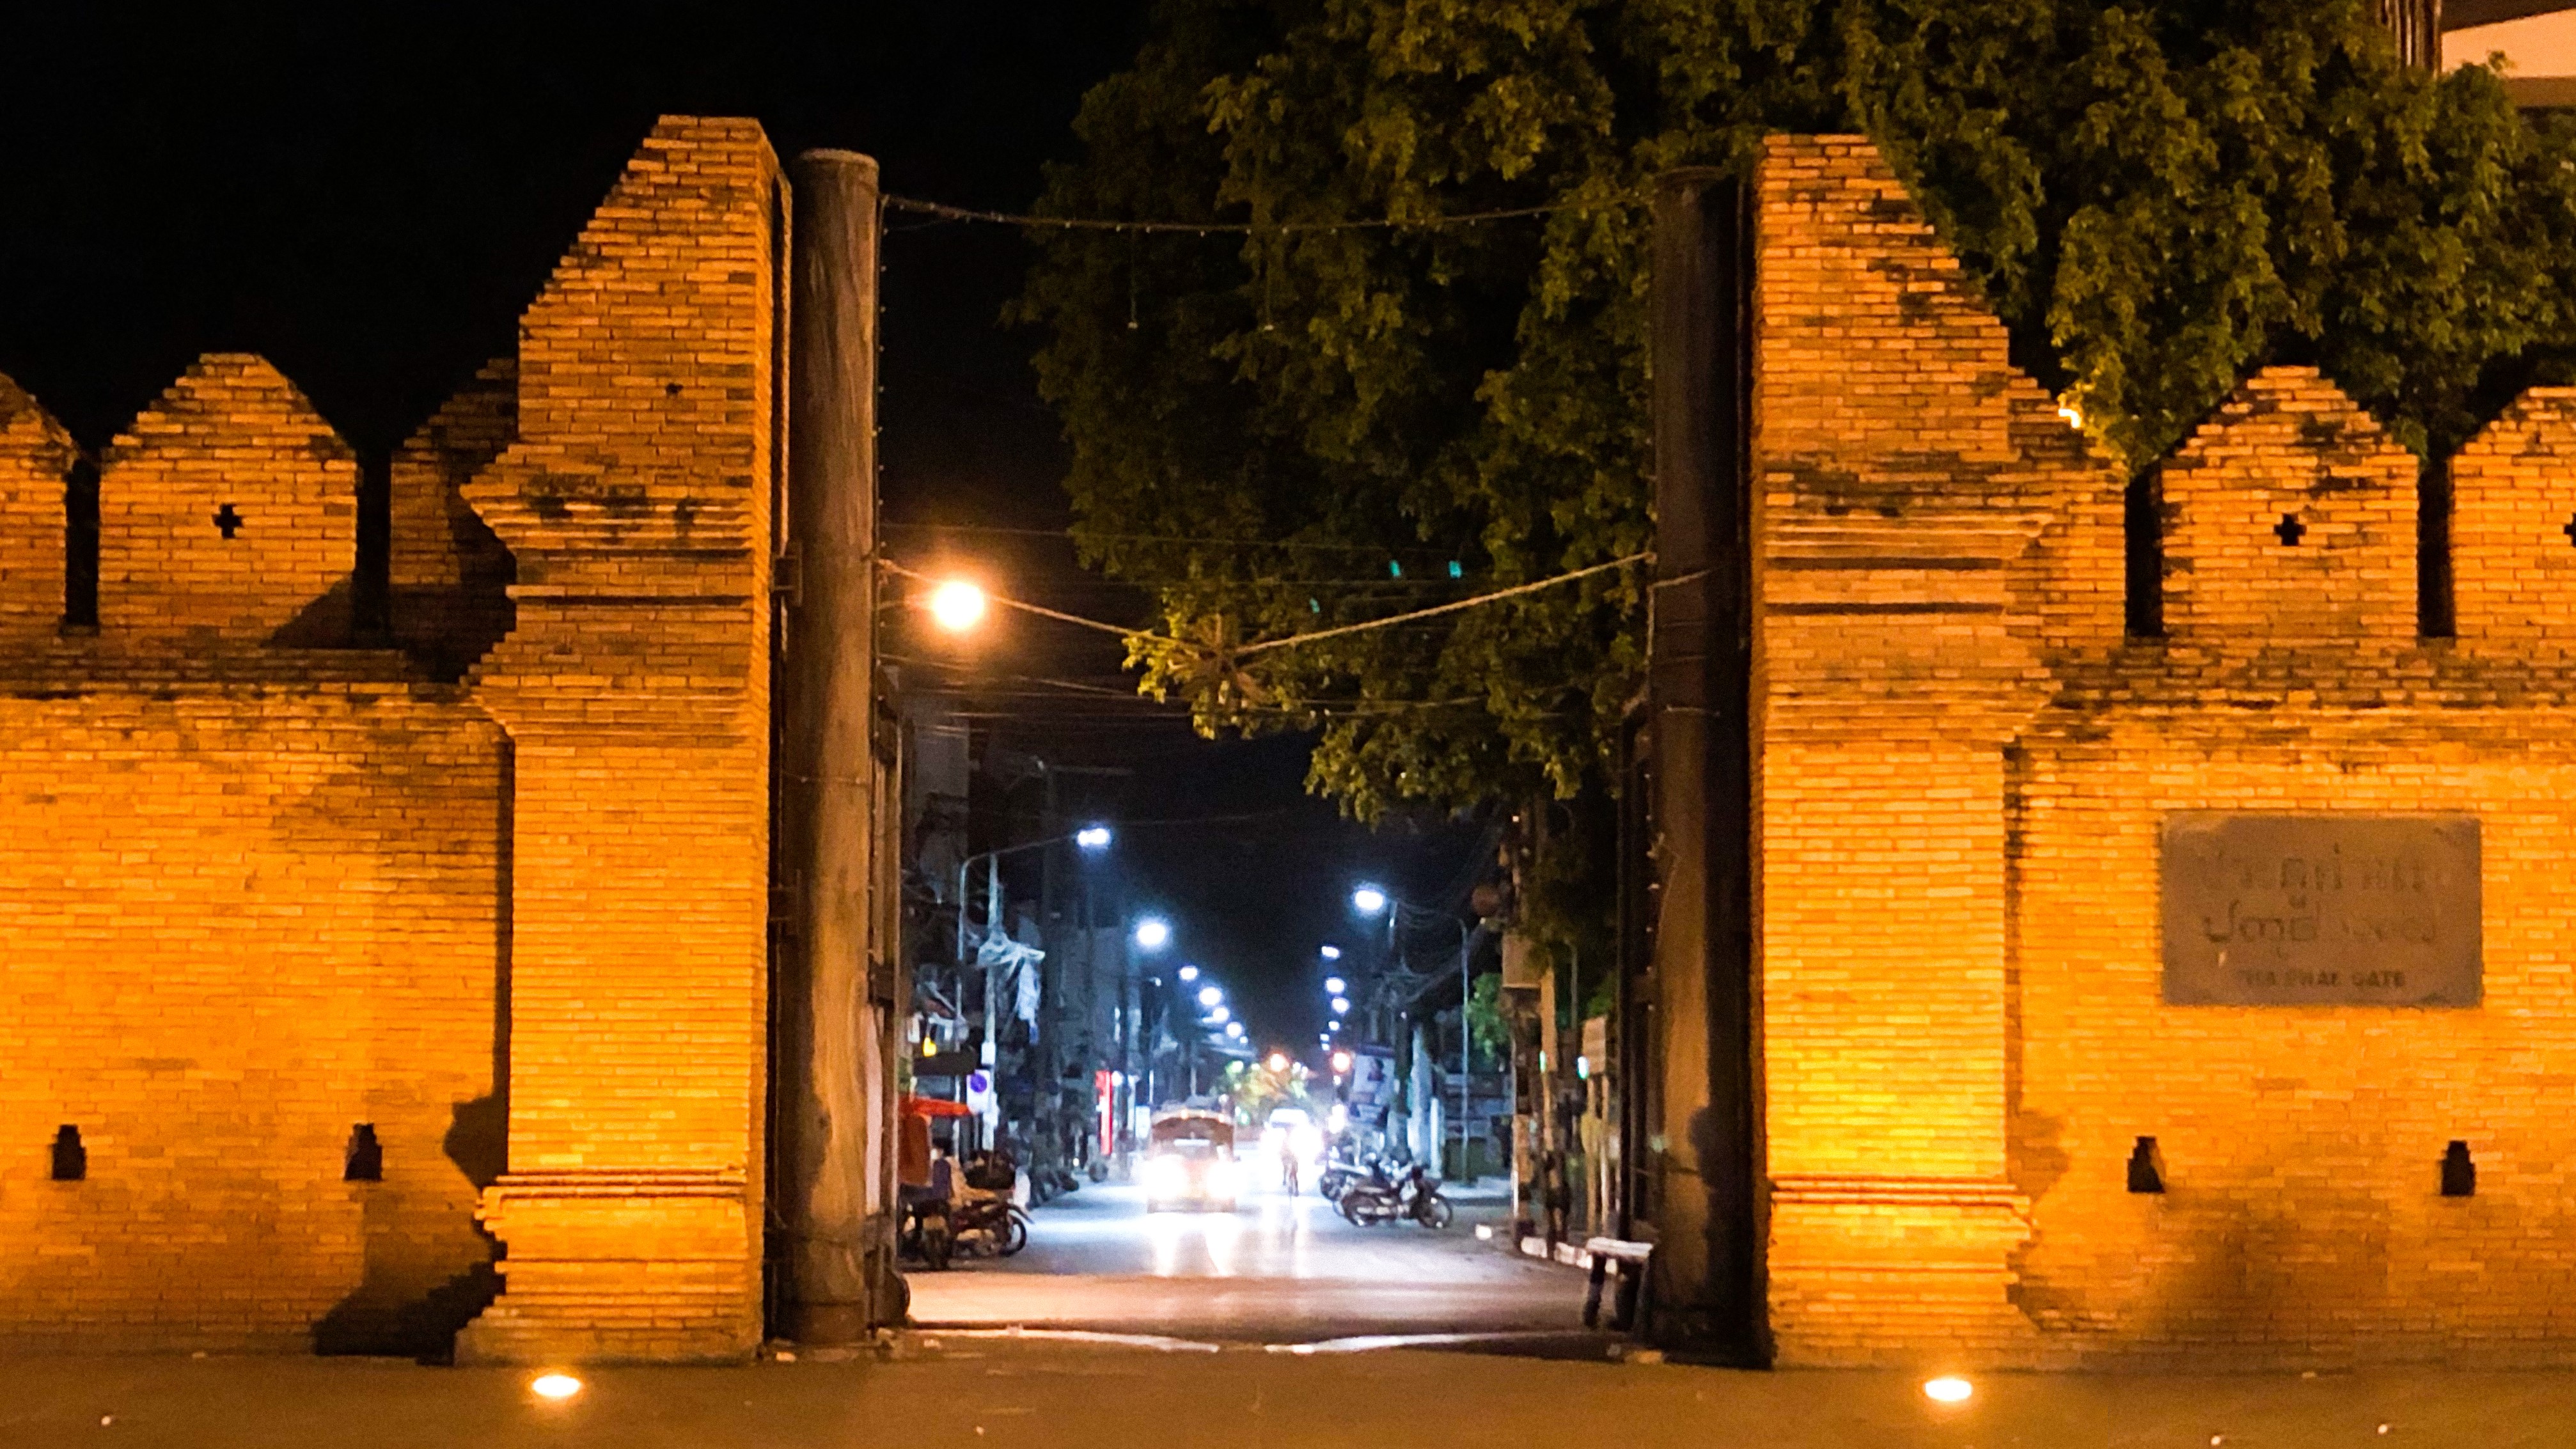 【sightseeing】ターペー門はチェンマイの旧市街を囲む城壁に作られた5つの門のうちの1つ